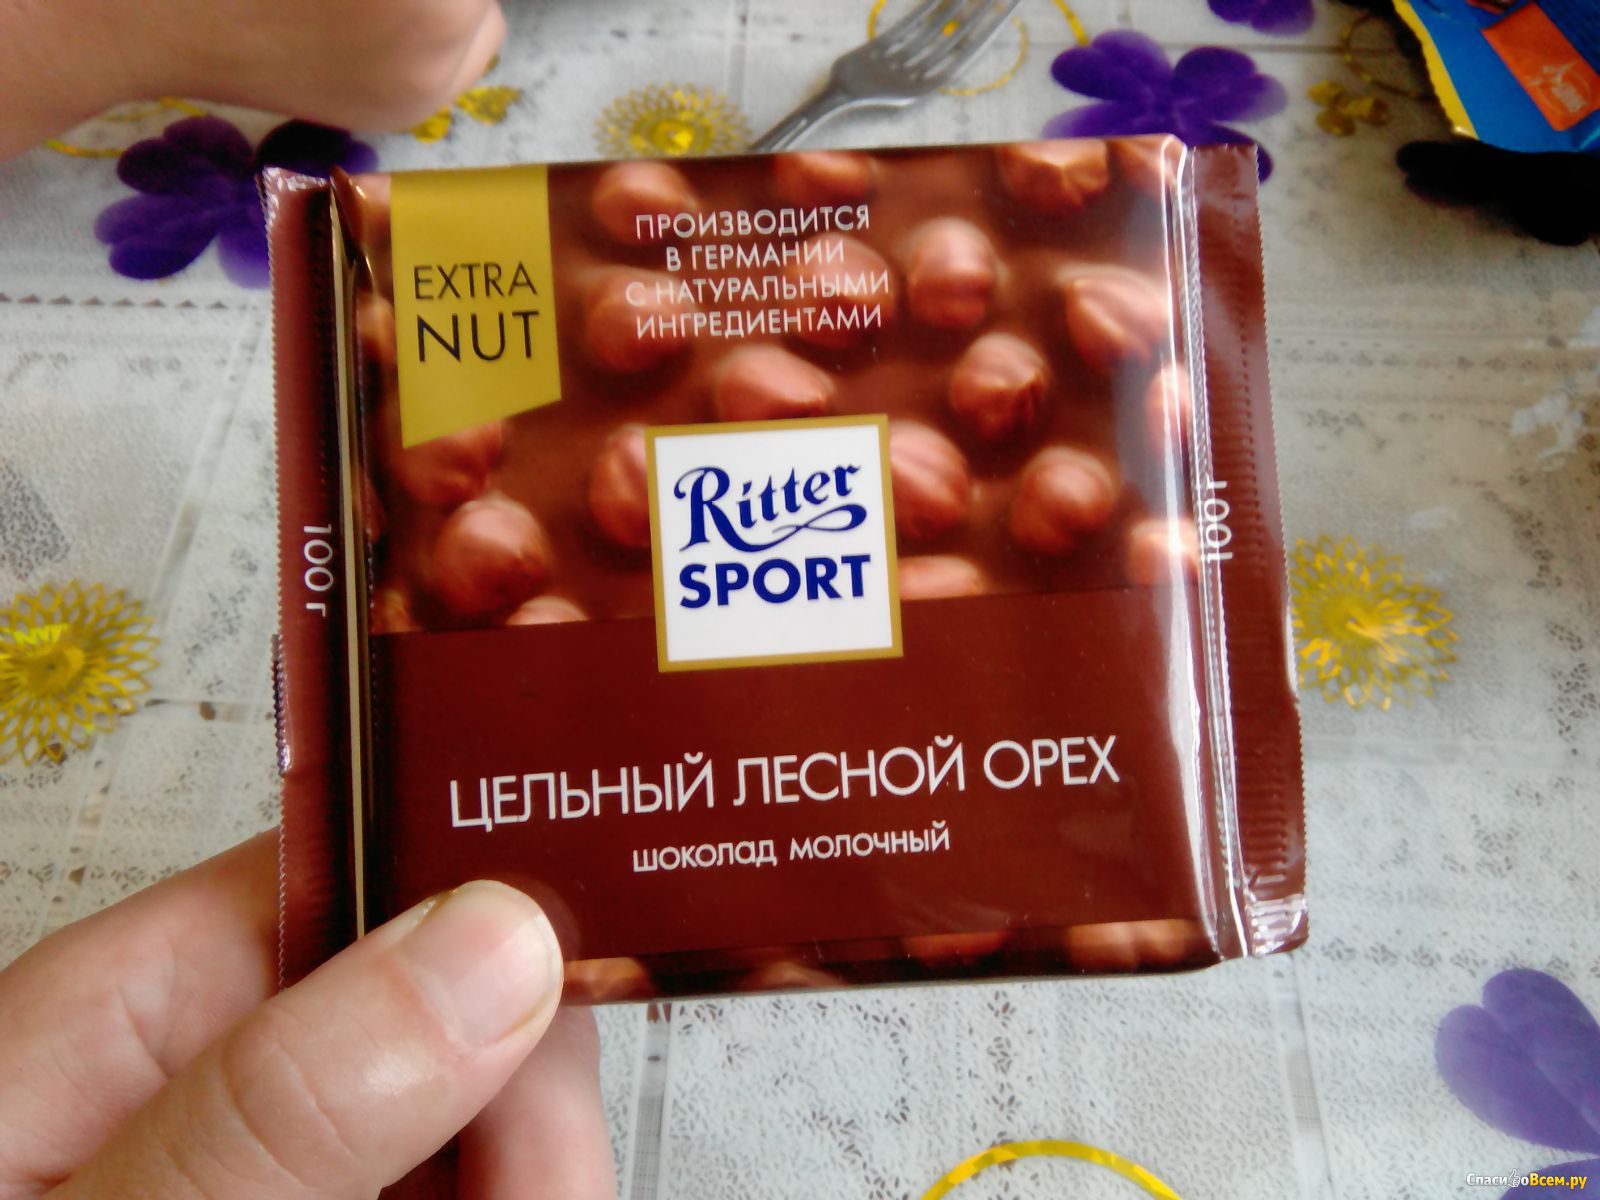 Риттер спорт шоколад Лесной орех 100 грамм